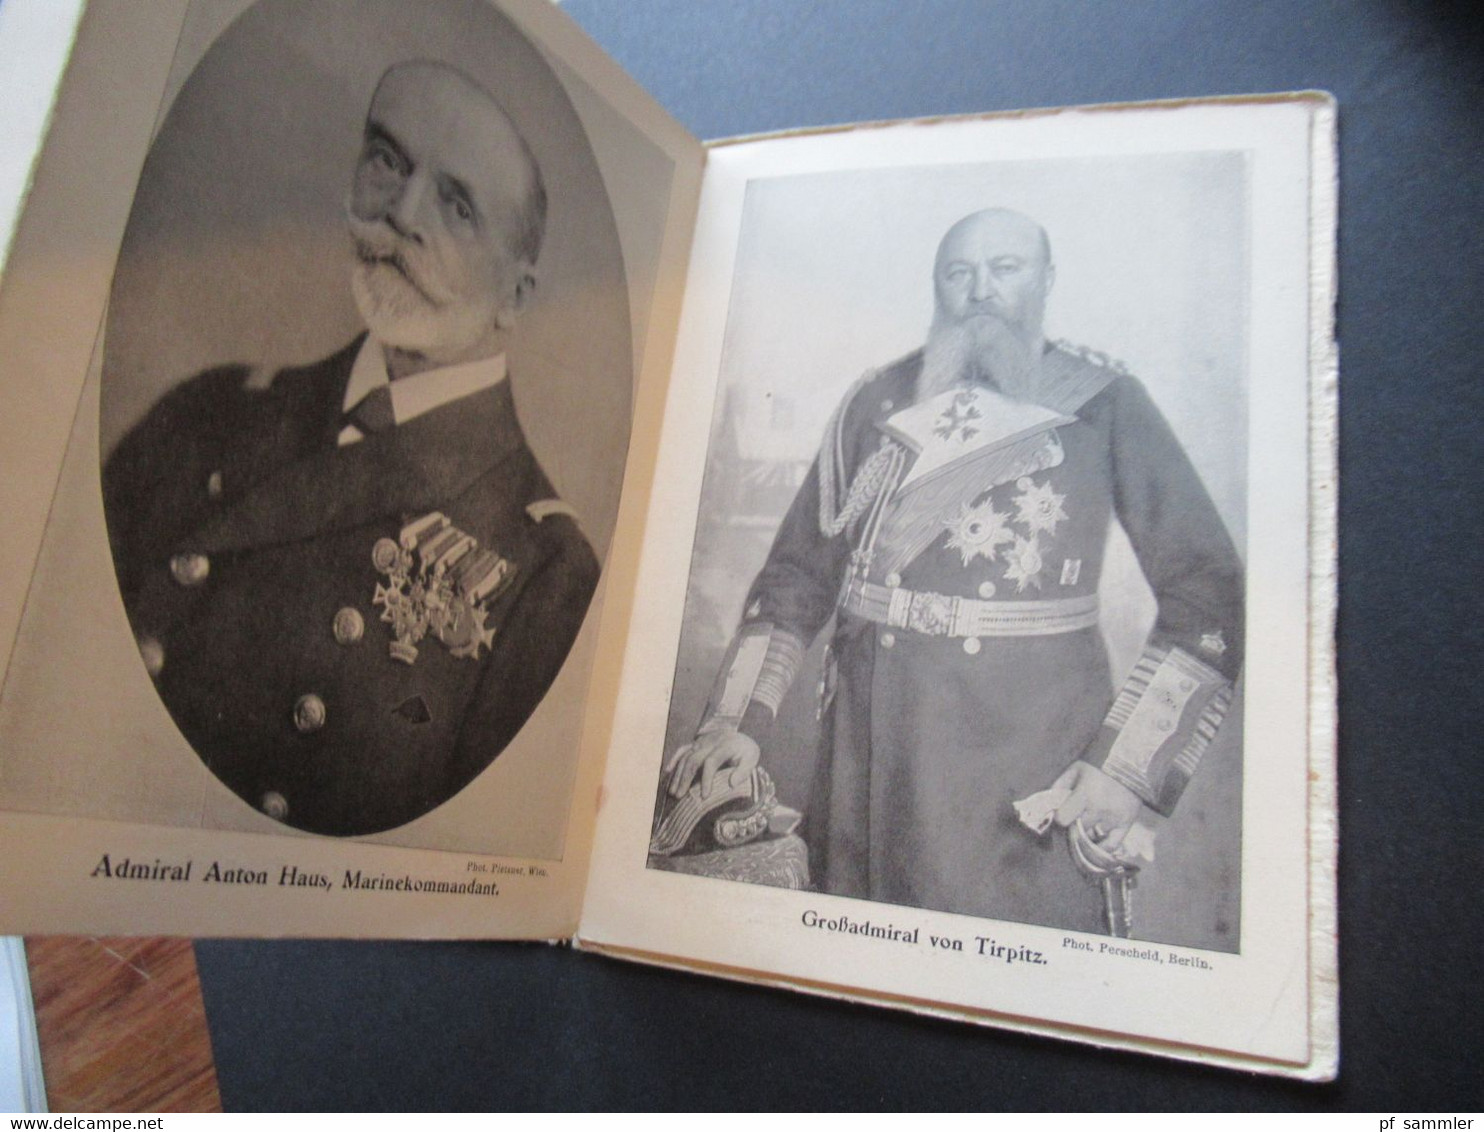 Leporello Die Führer Deutschlands und Österreich-Ungarns im Weltkriege 1914 mit 26 illustrierten Bildern / Portraits